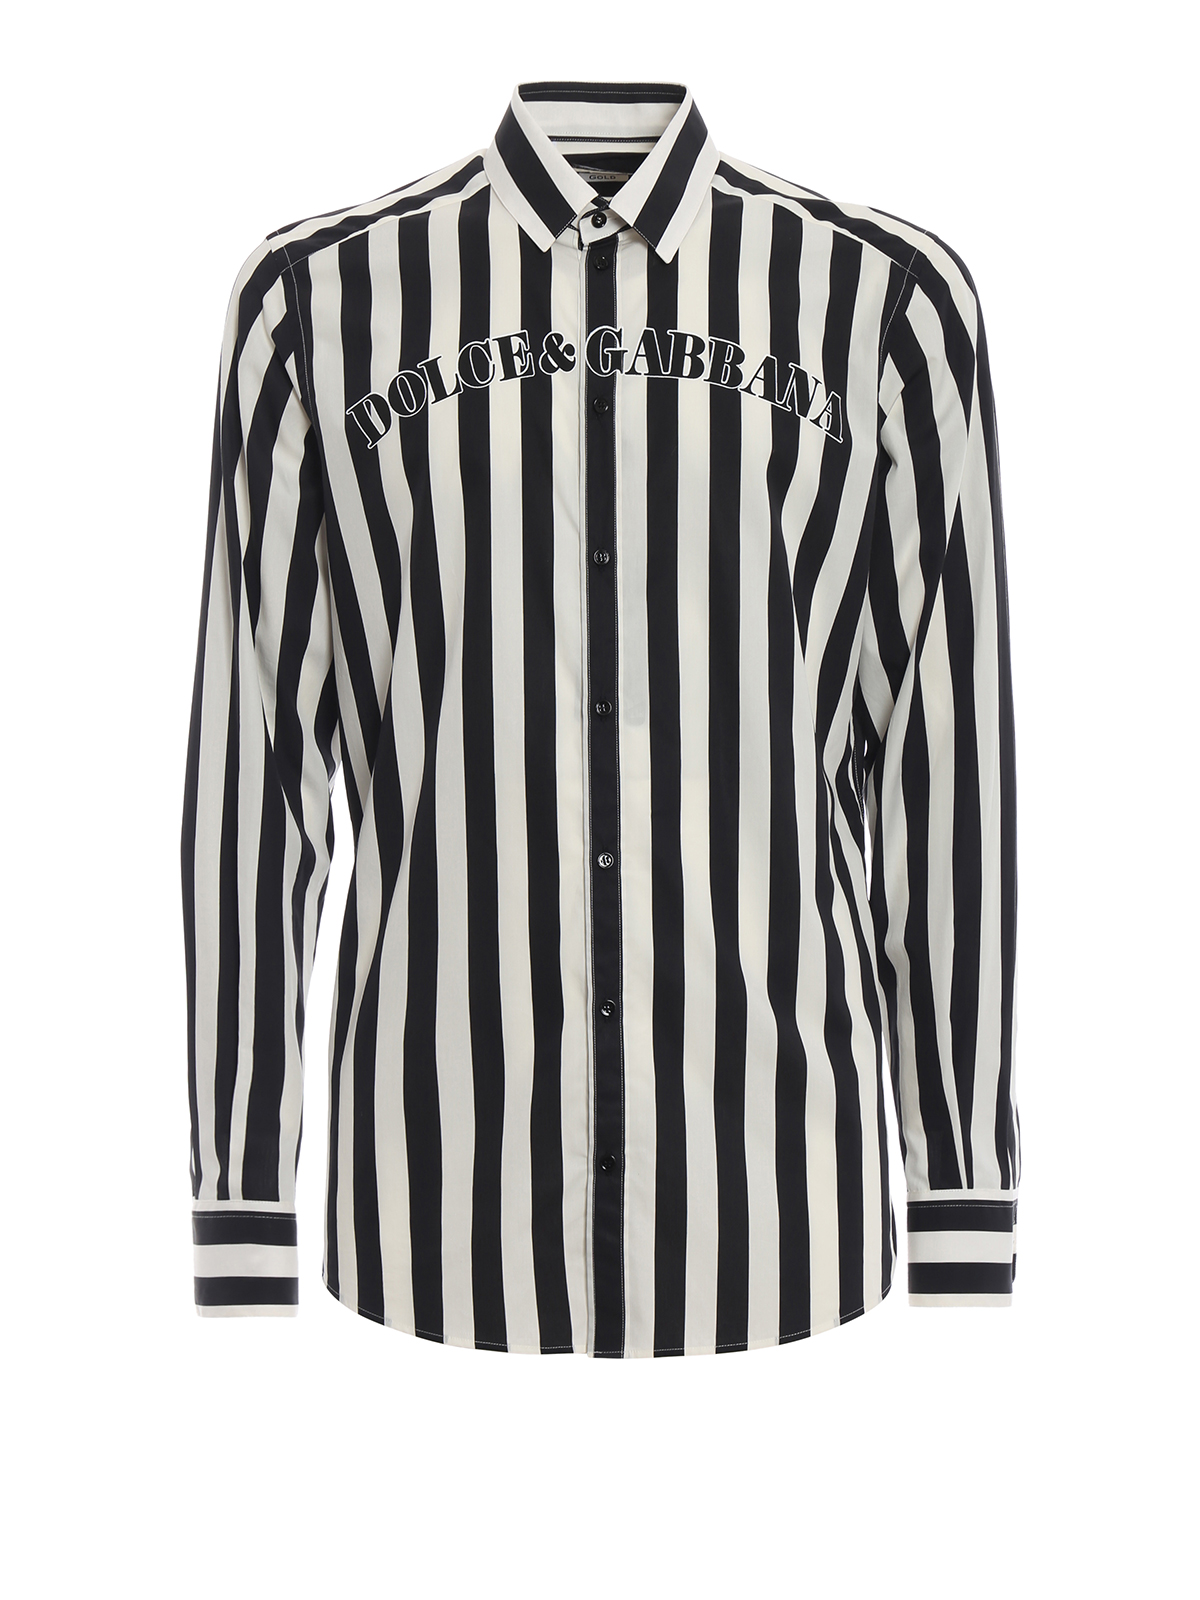 Baseball-inspired striped shirt 